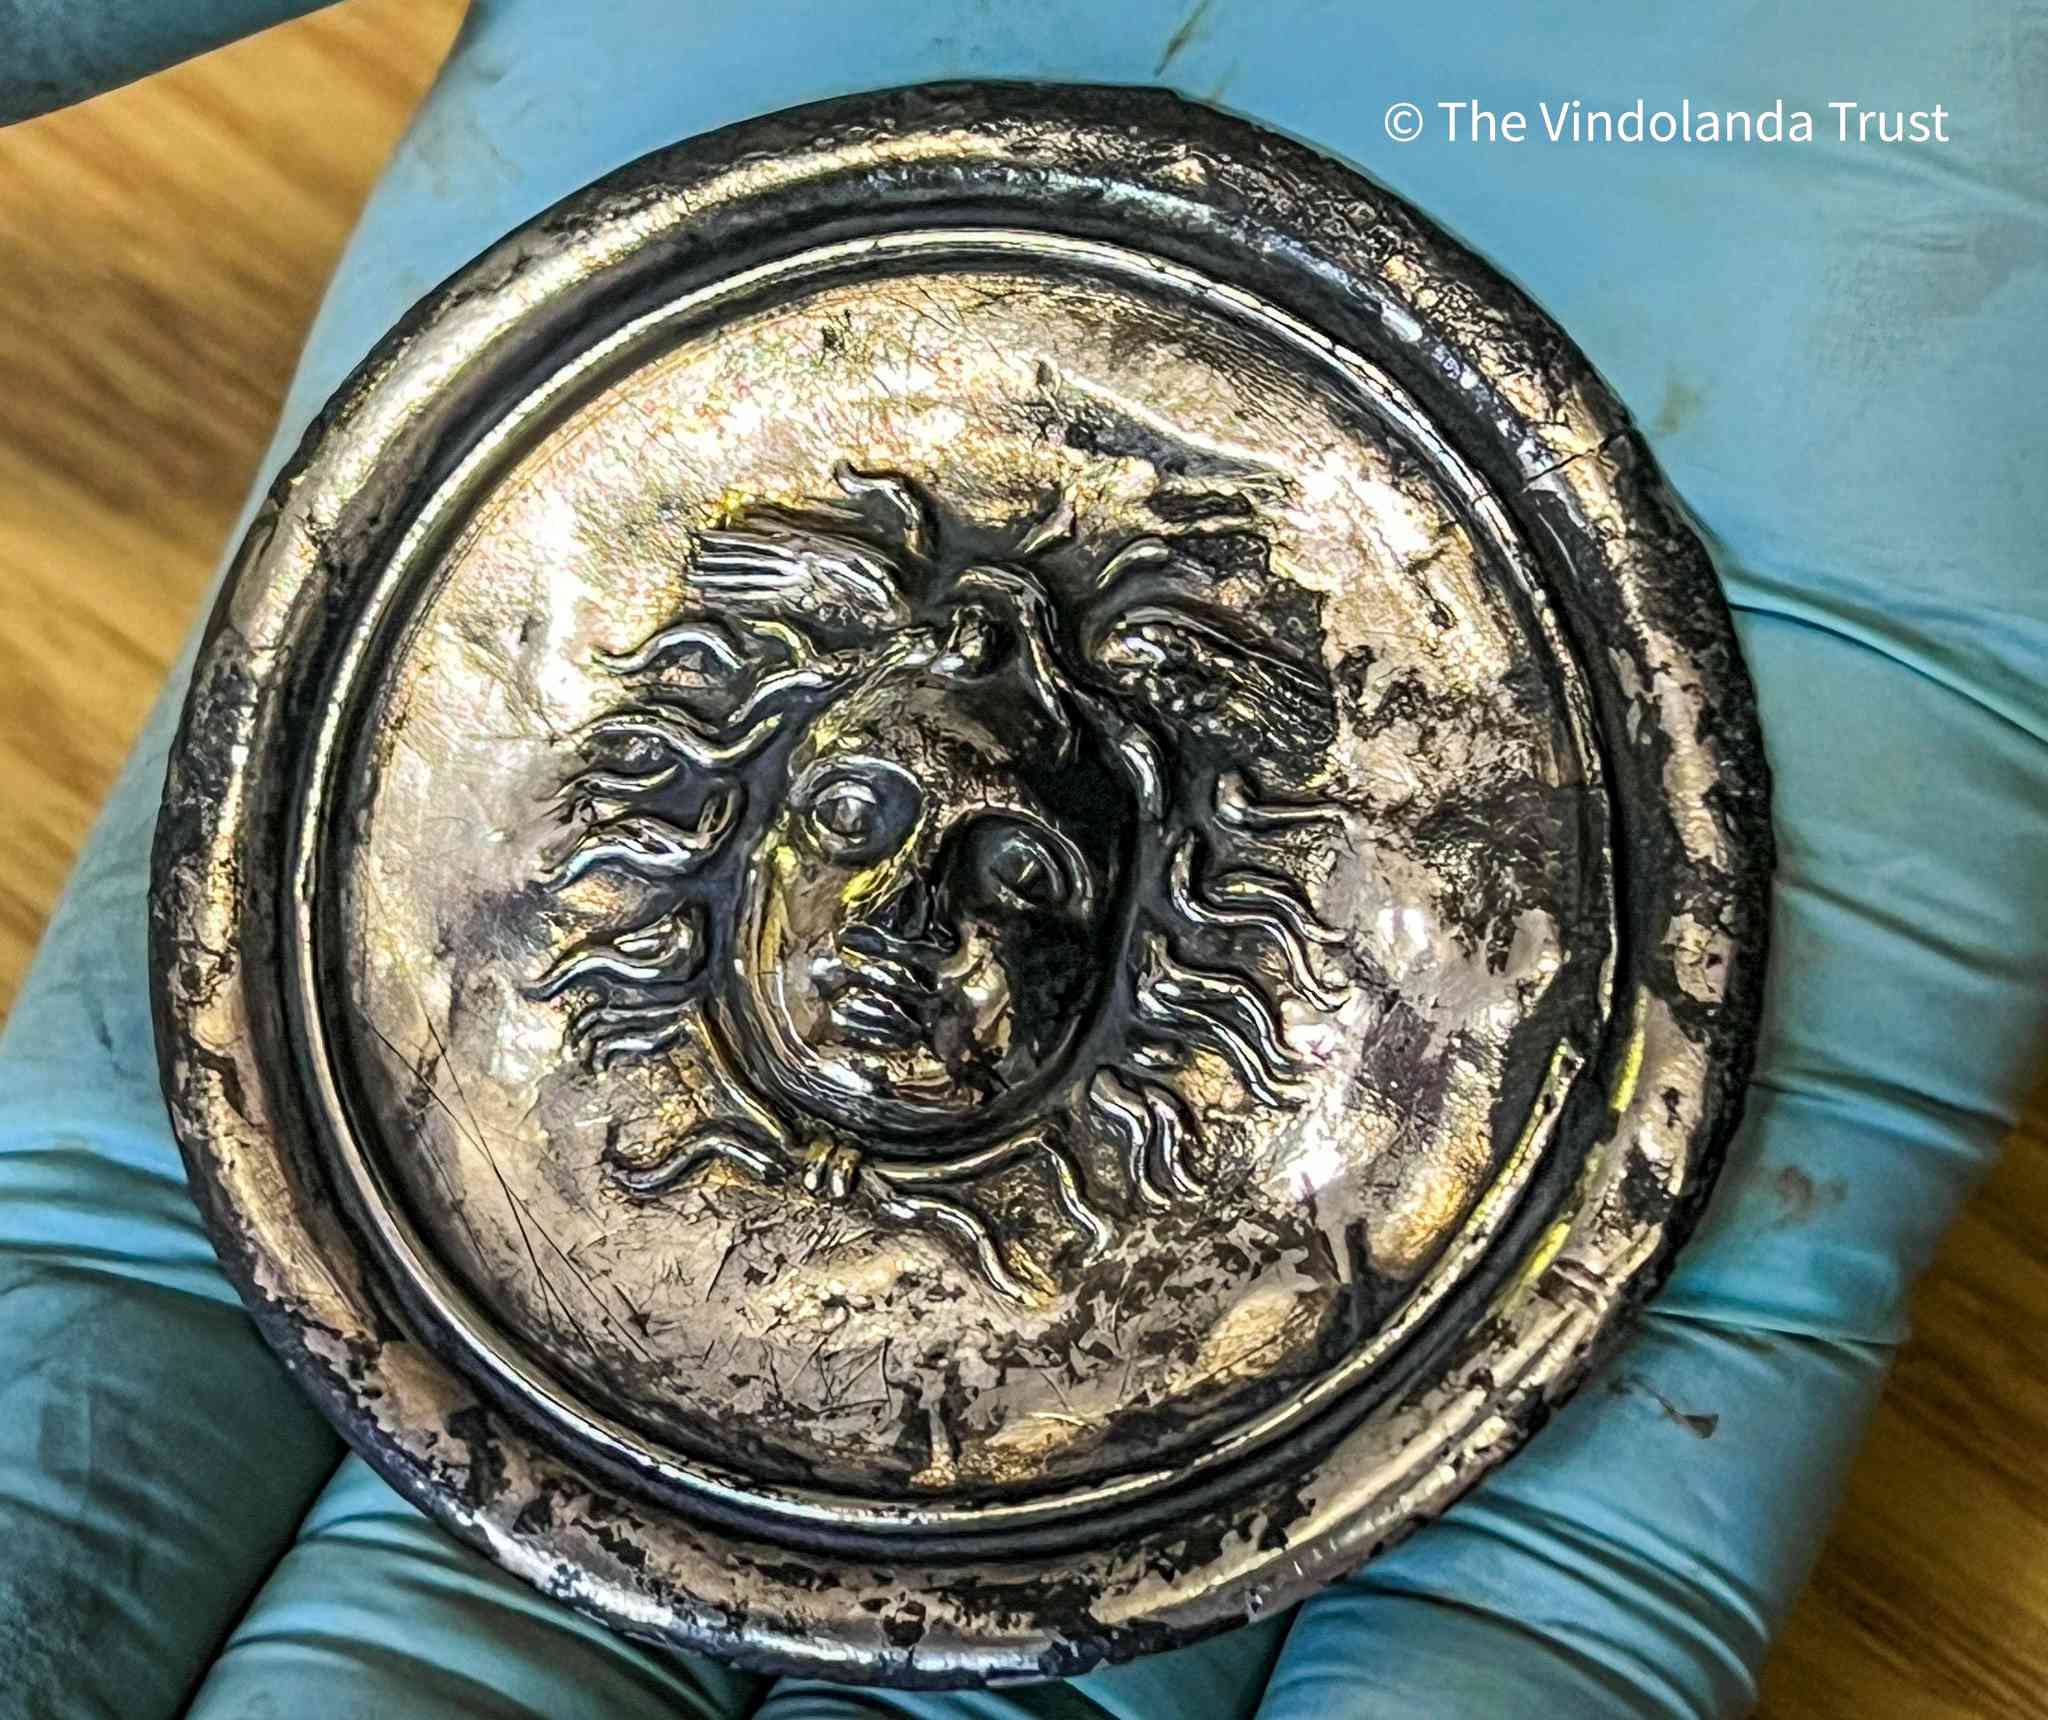 La falera romana, o medaglia militare, raffigura Medusa con due ali sopra la testa.